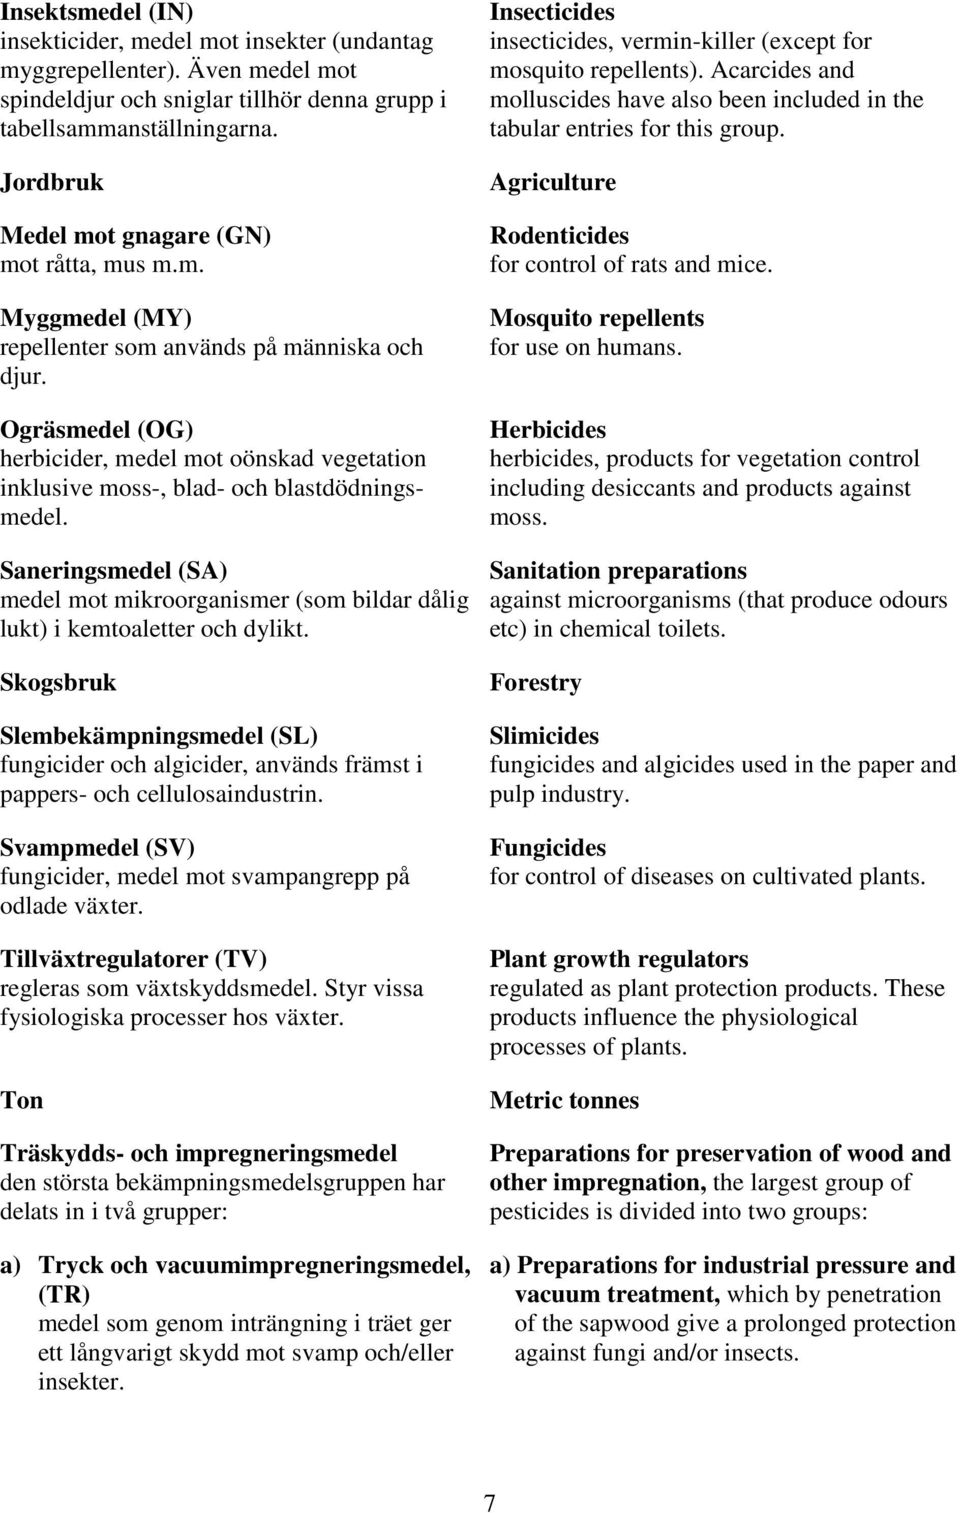 Ogräsmedel (OG) herbicider, medel mot oönskad vegetation inklusive moss-, blad- och blastdödningsmedel. Saneringsmedel (SA) medel mot mikroorganismer (som bildar dålig lukt) i kemtoaletter och dylikt.